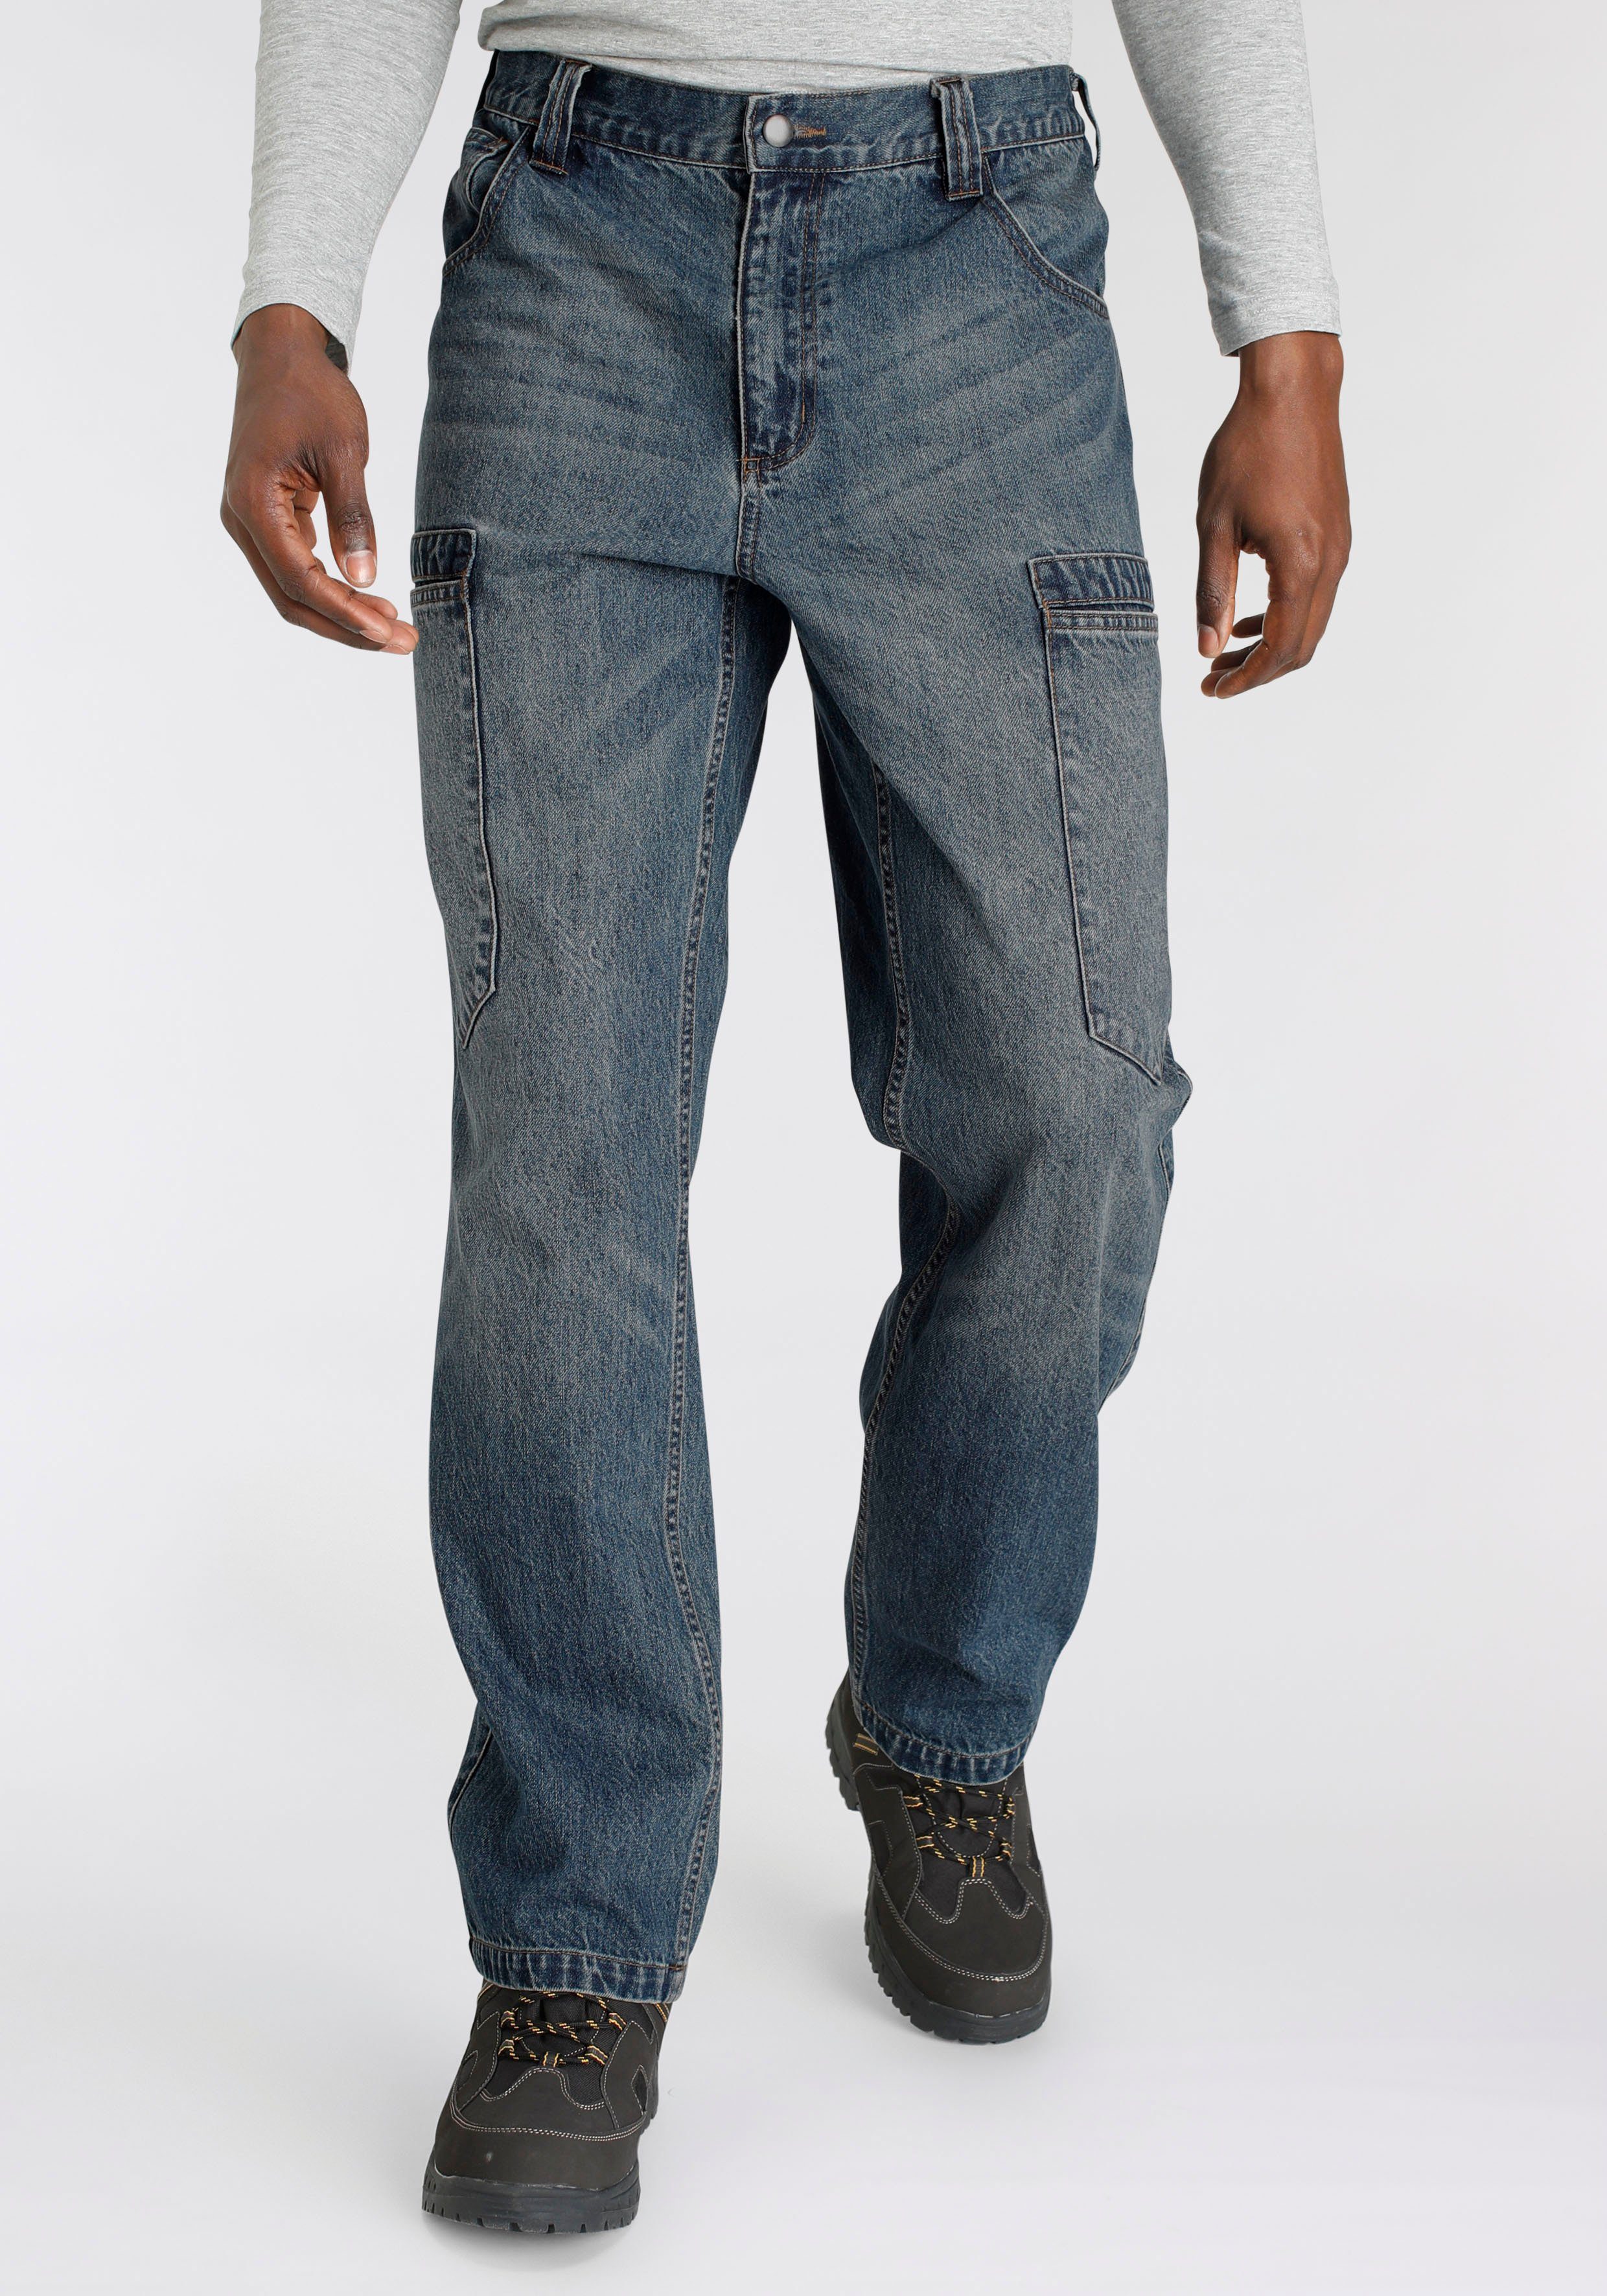 Jeansstoff, fit) Cargo Taschen Arbeitshose dehnbarem 100% (aus Baumwolle, mit Bund, 6 Country comfort mit robuster praktischen Northern Jeans